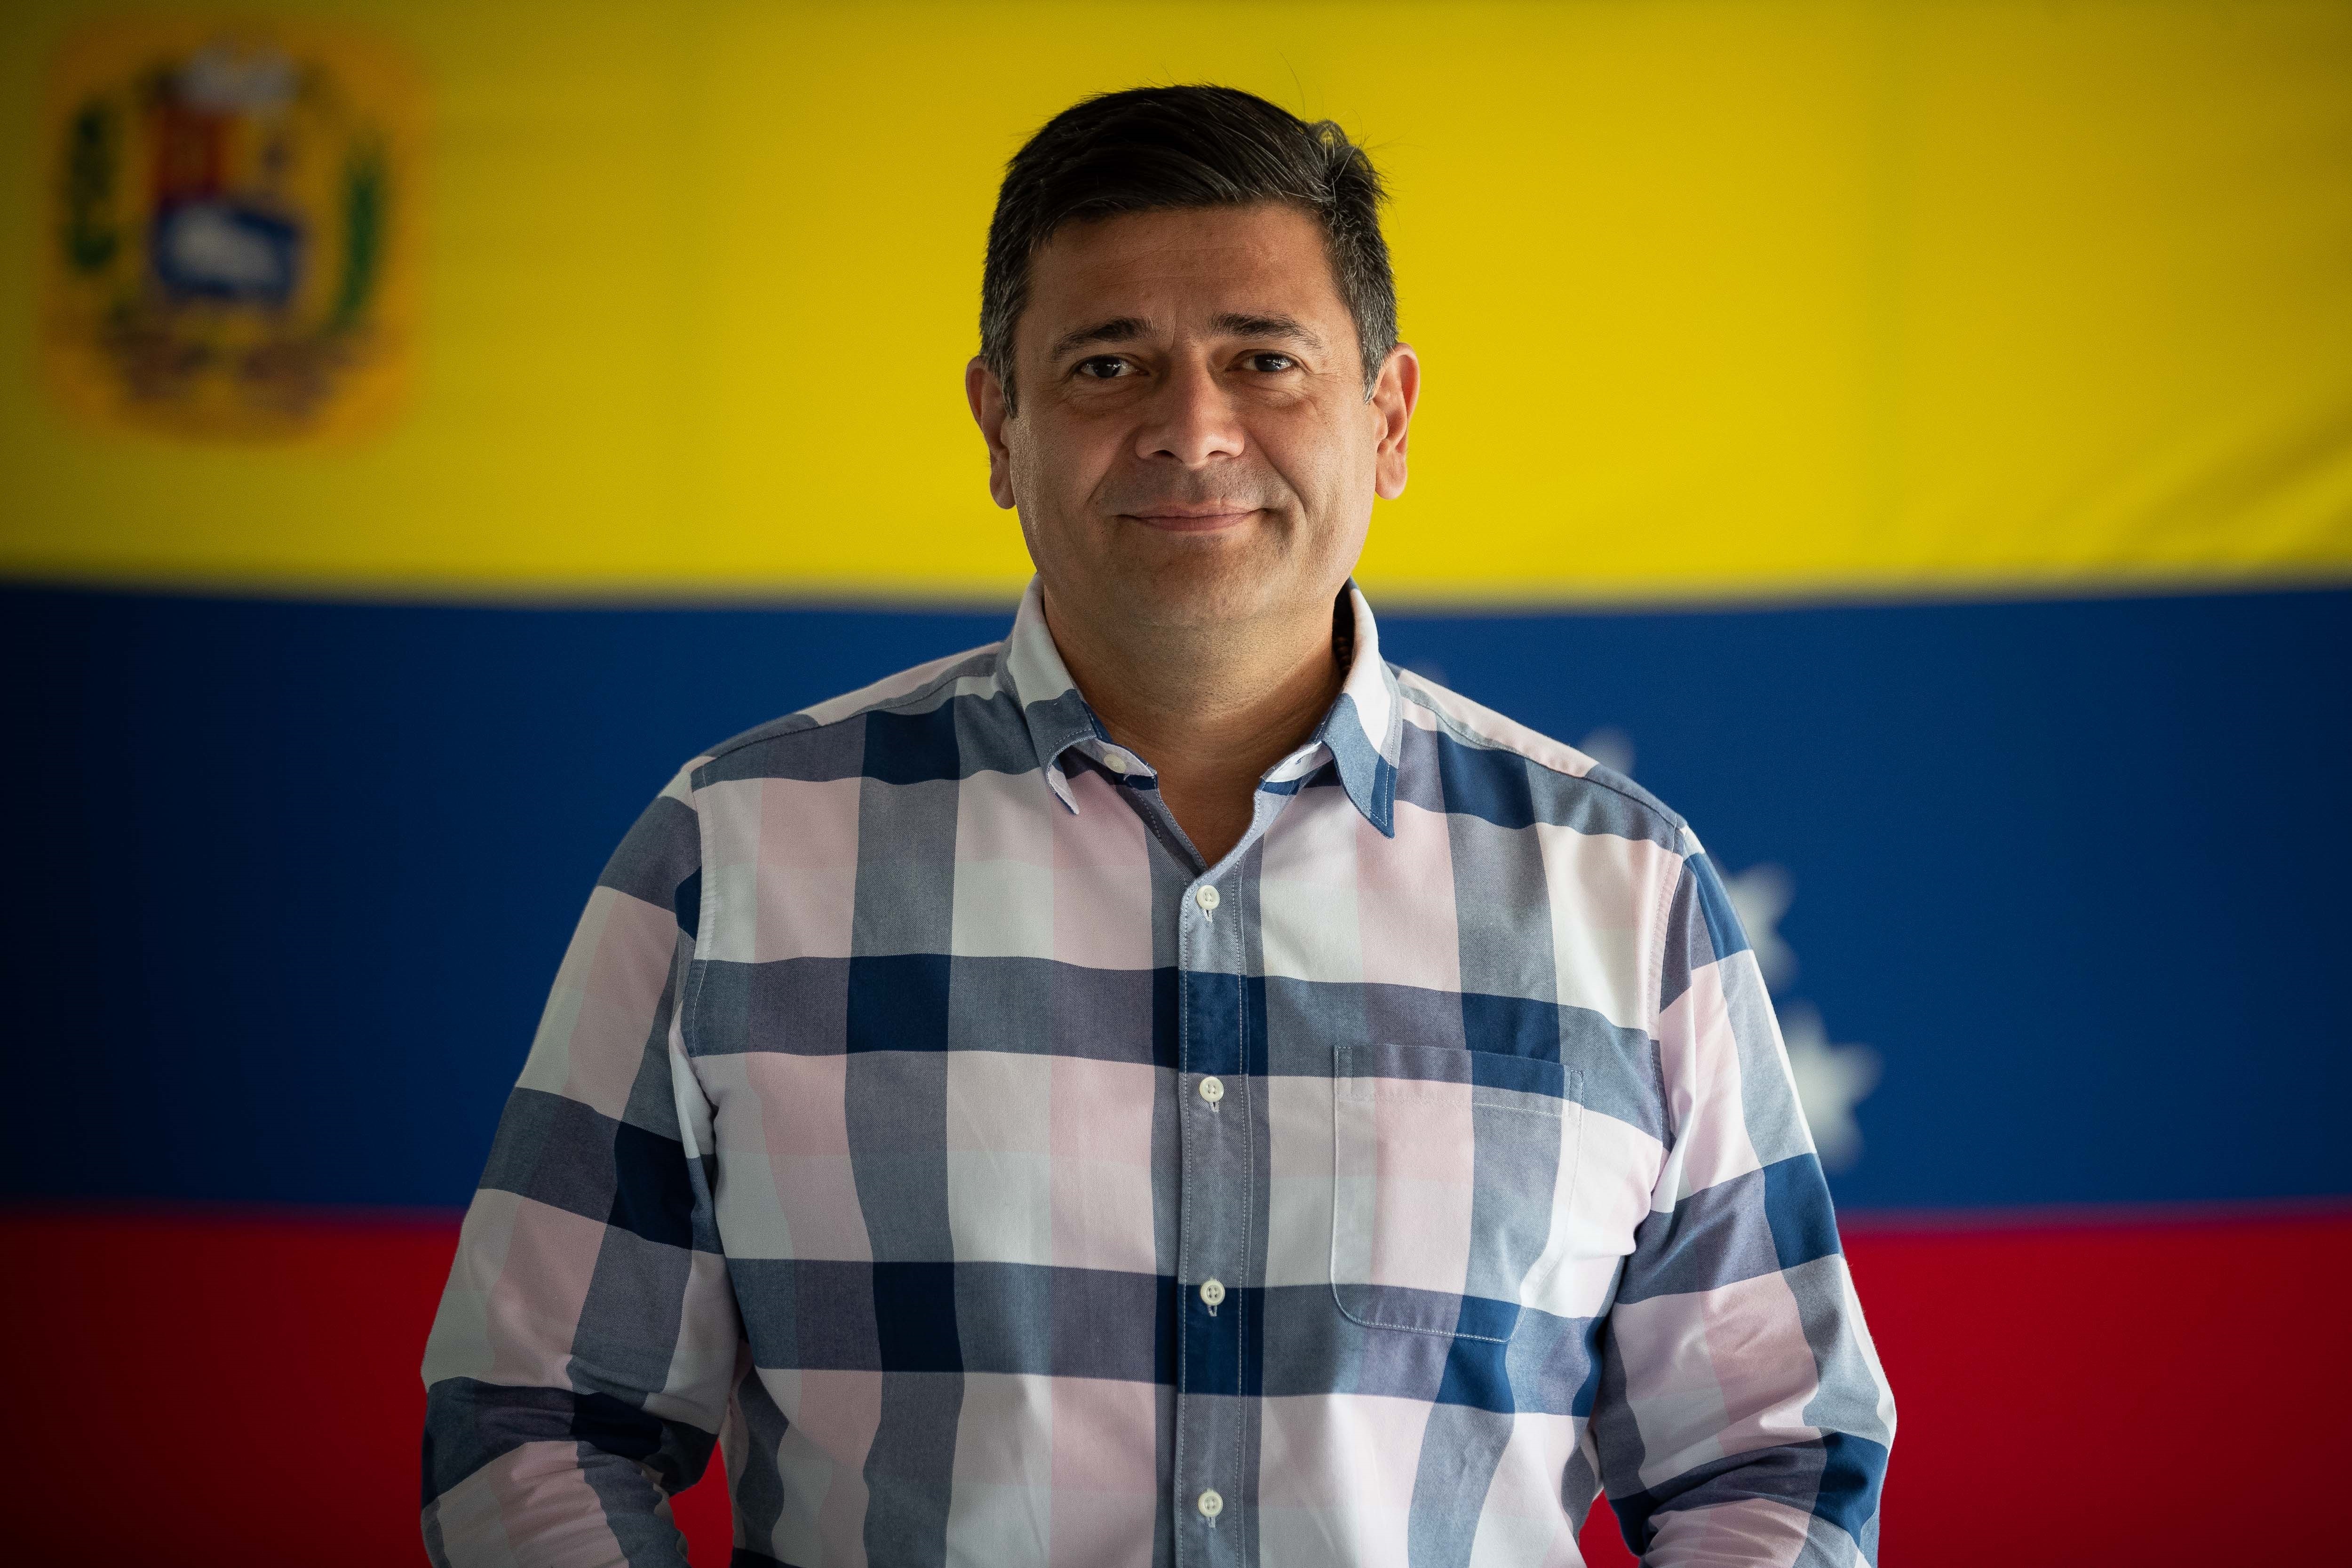 Freddy Superlano anunció un nuevo candidato para la gobernación de Barinas, tras la inhabilitación de otros opositores por el régimen de Maduro